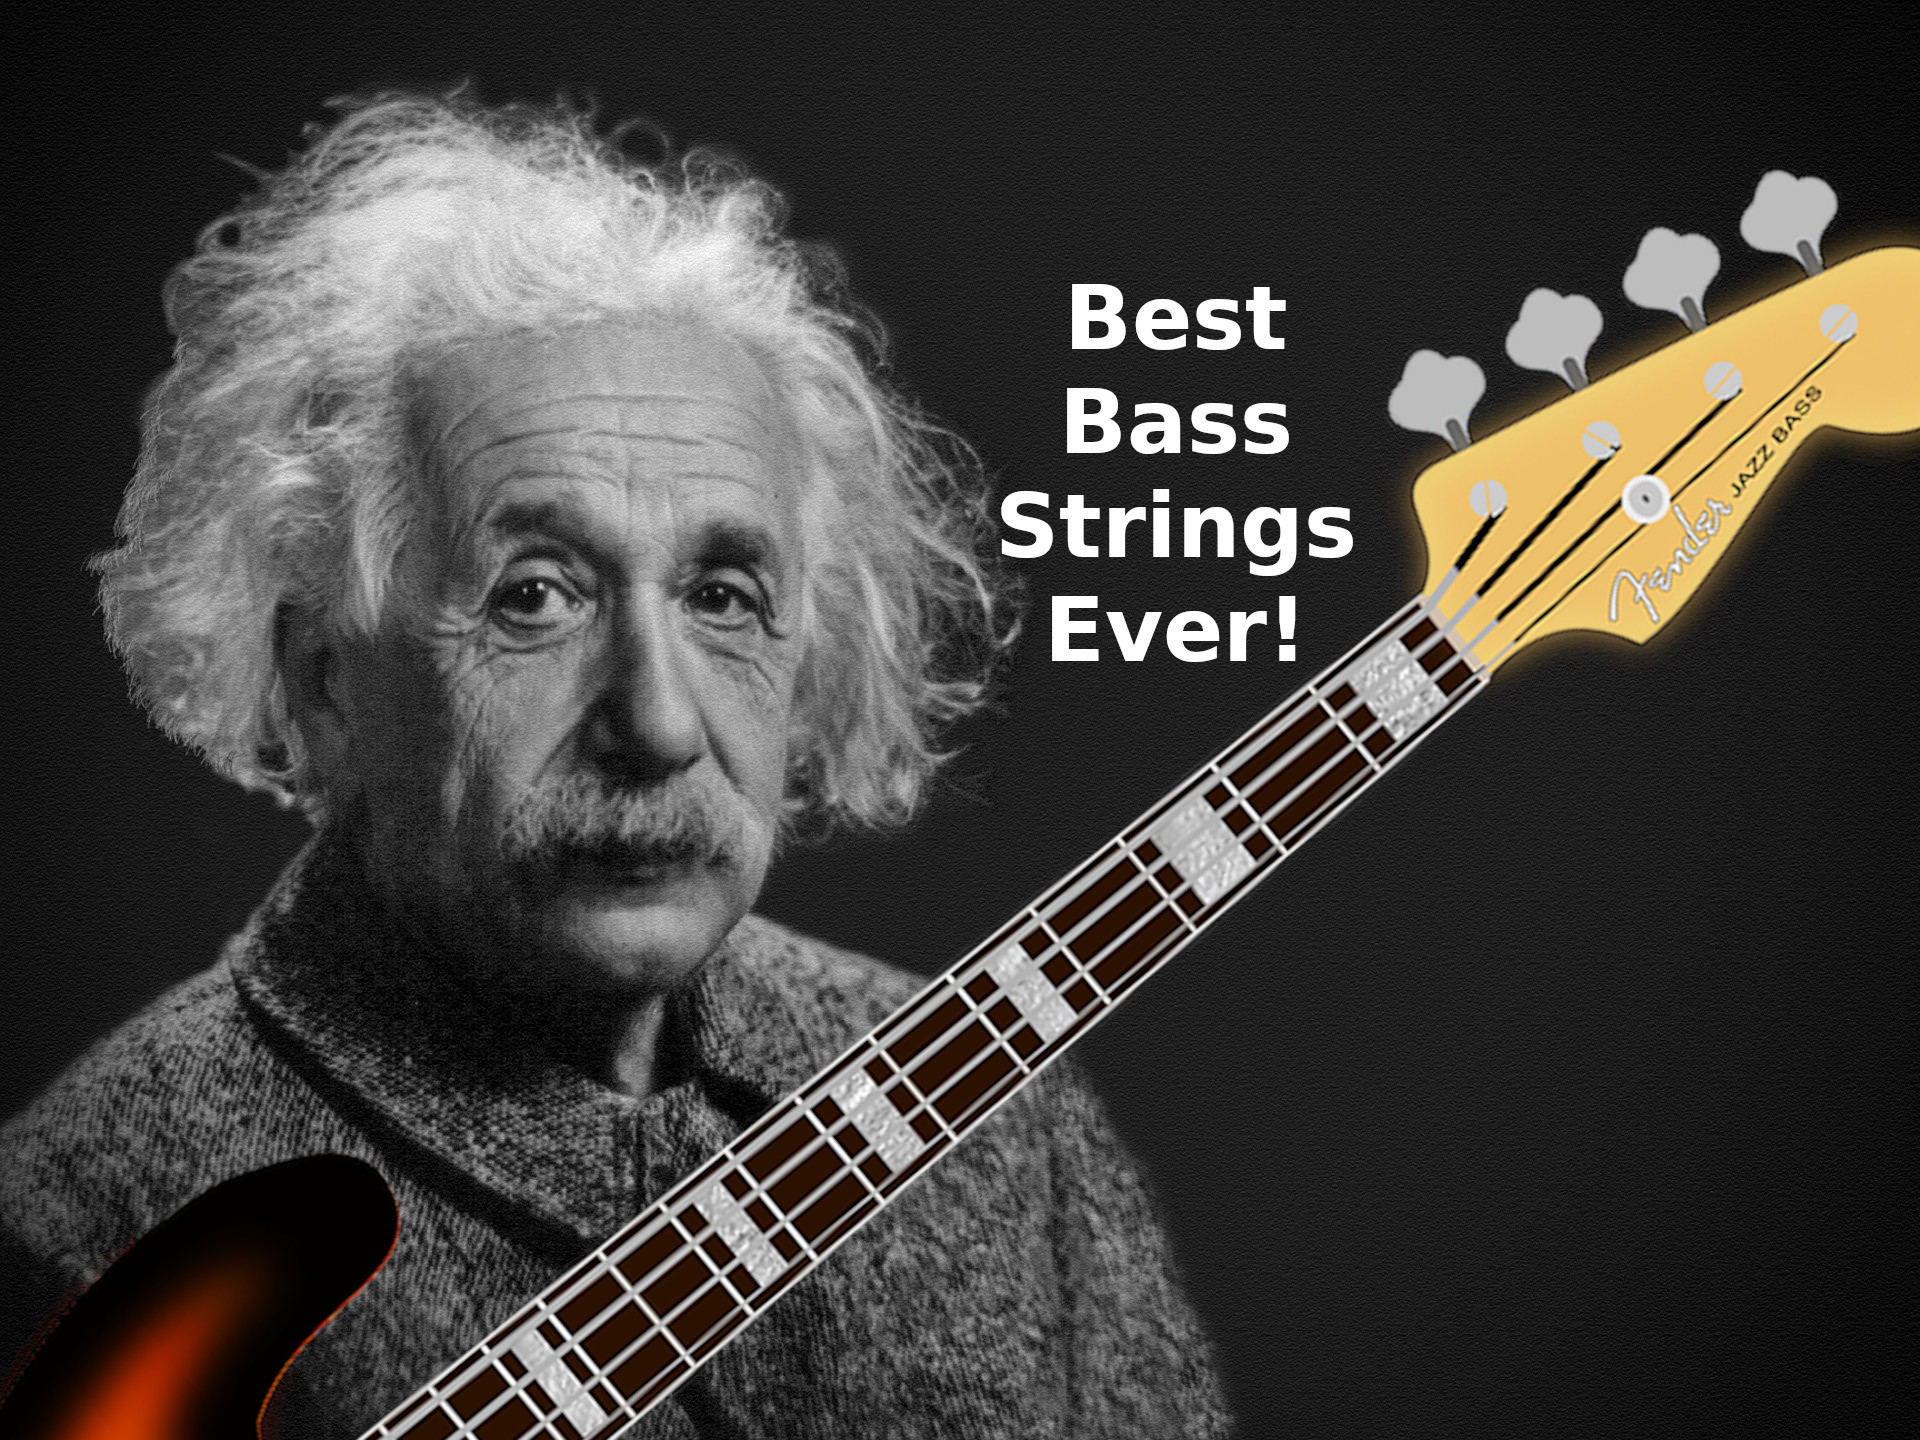 bass guitar strings - best ever